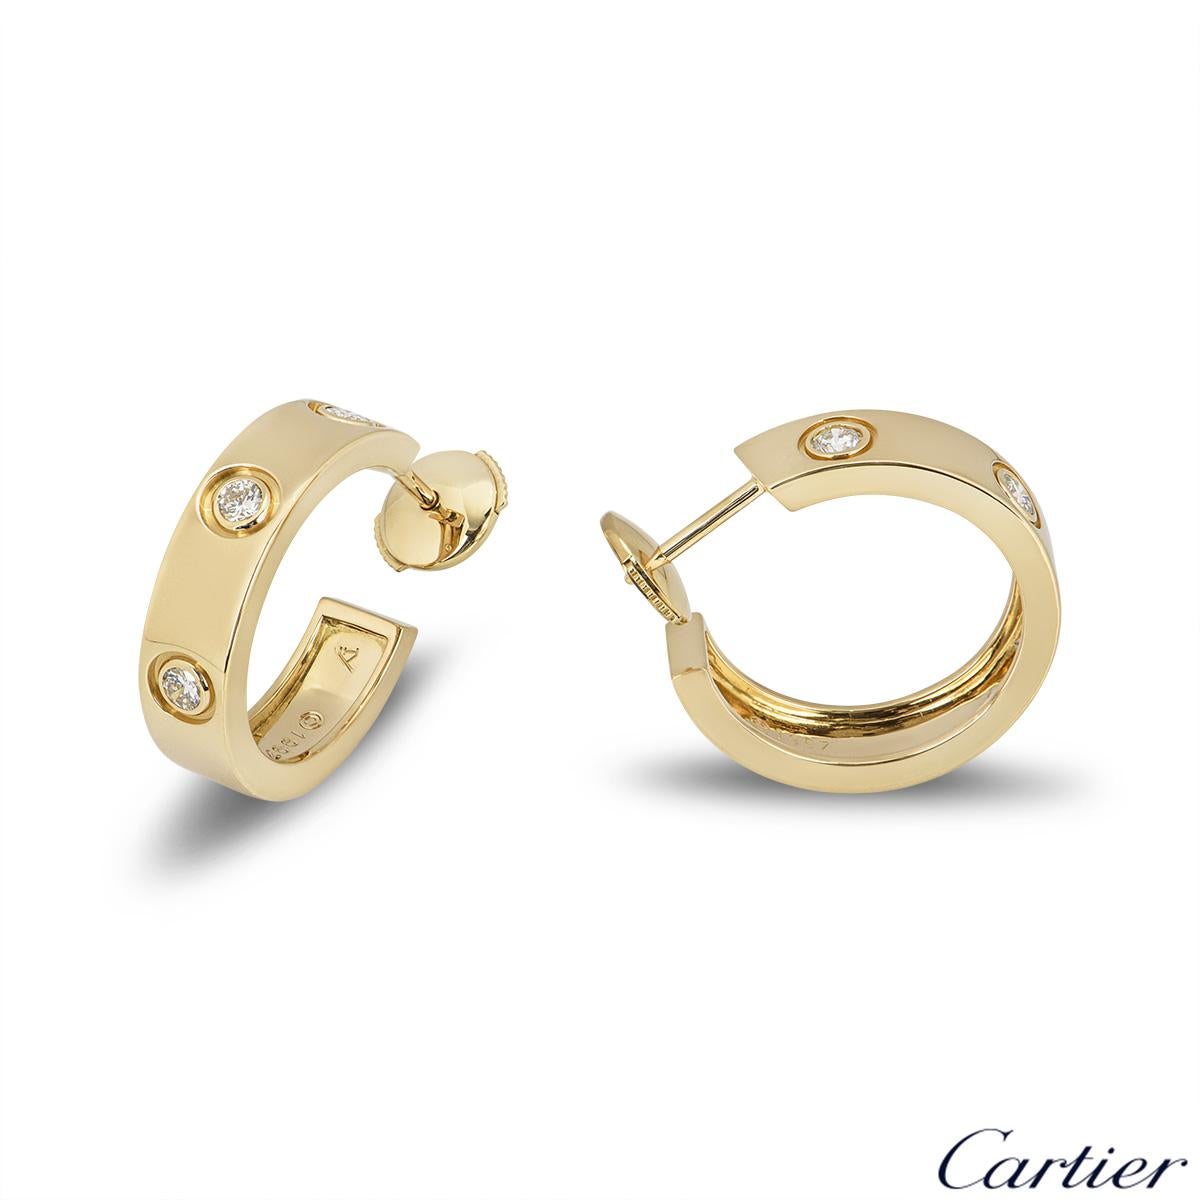 Une paire de boucles d'oreilles en or jaune 18 carats avec des diamants de la collection iconique Love de Cartier. Chaque boucle d'oreille est sertie de 3 diamants ronds de taille brillante. Les boucles d'oreilles mesurent 20 mm de long et 5 mm de